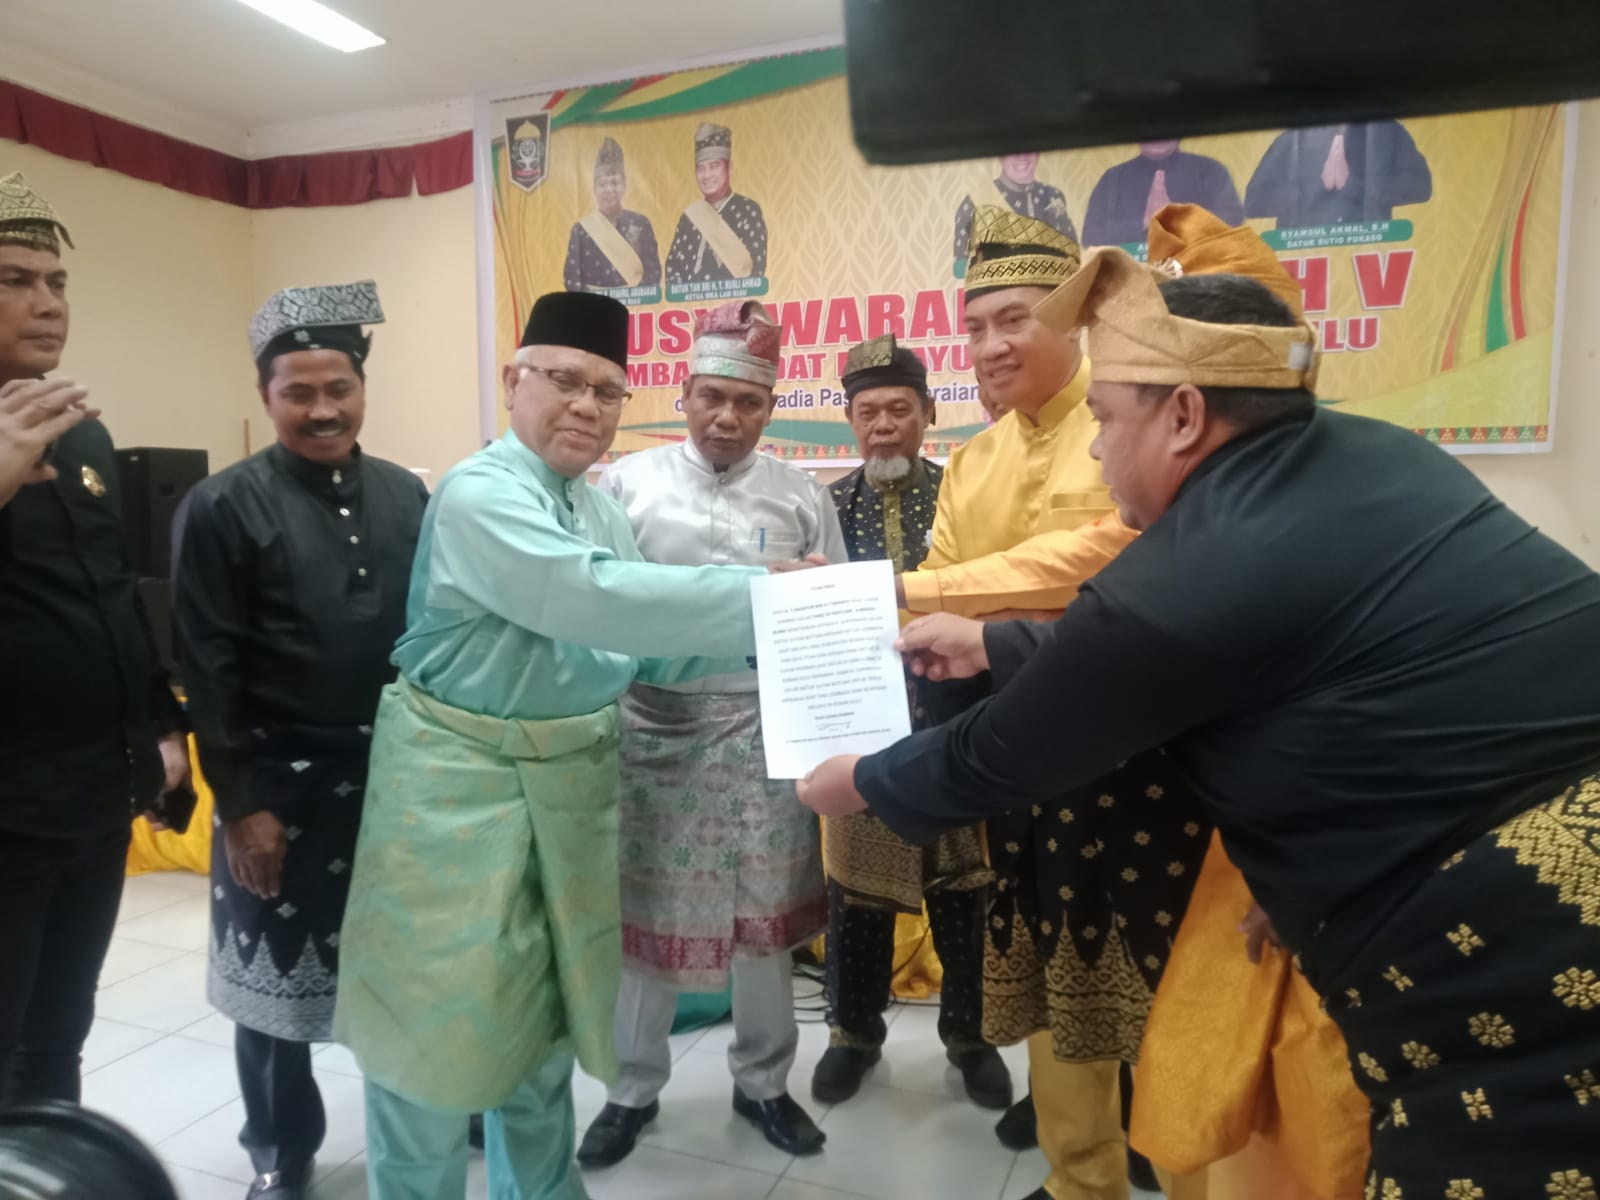 Dapat Dukungan 18 Suara, H. Suparman Terpilih Jadi Ketua LAMR Rohul